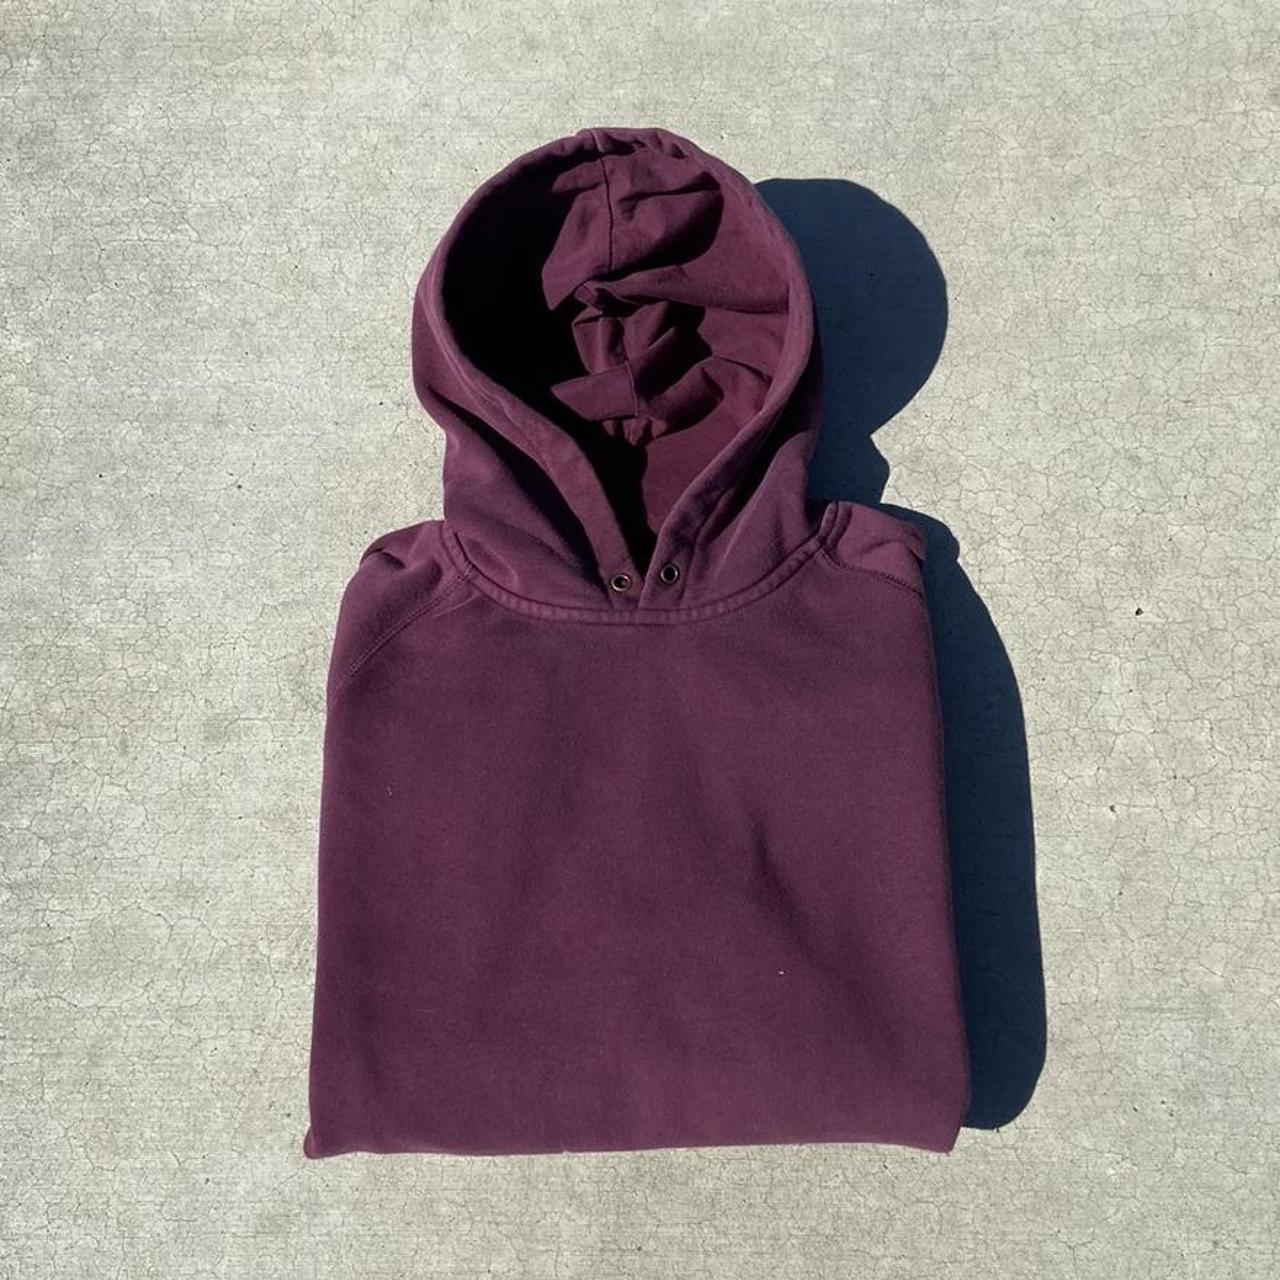 Essential Carhartt WIP hoodie! Size Large... - Depop